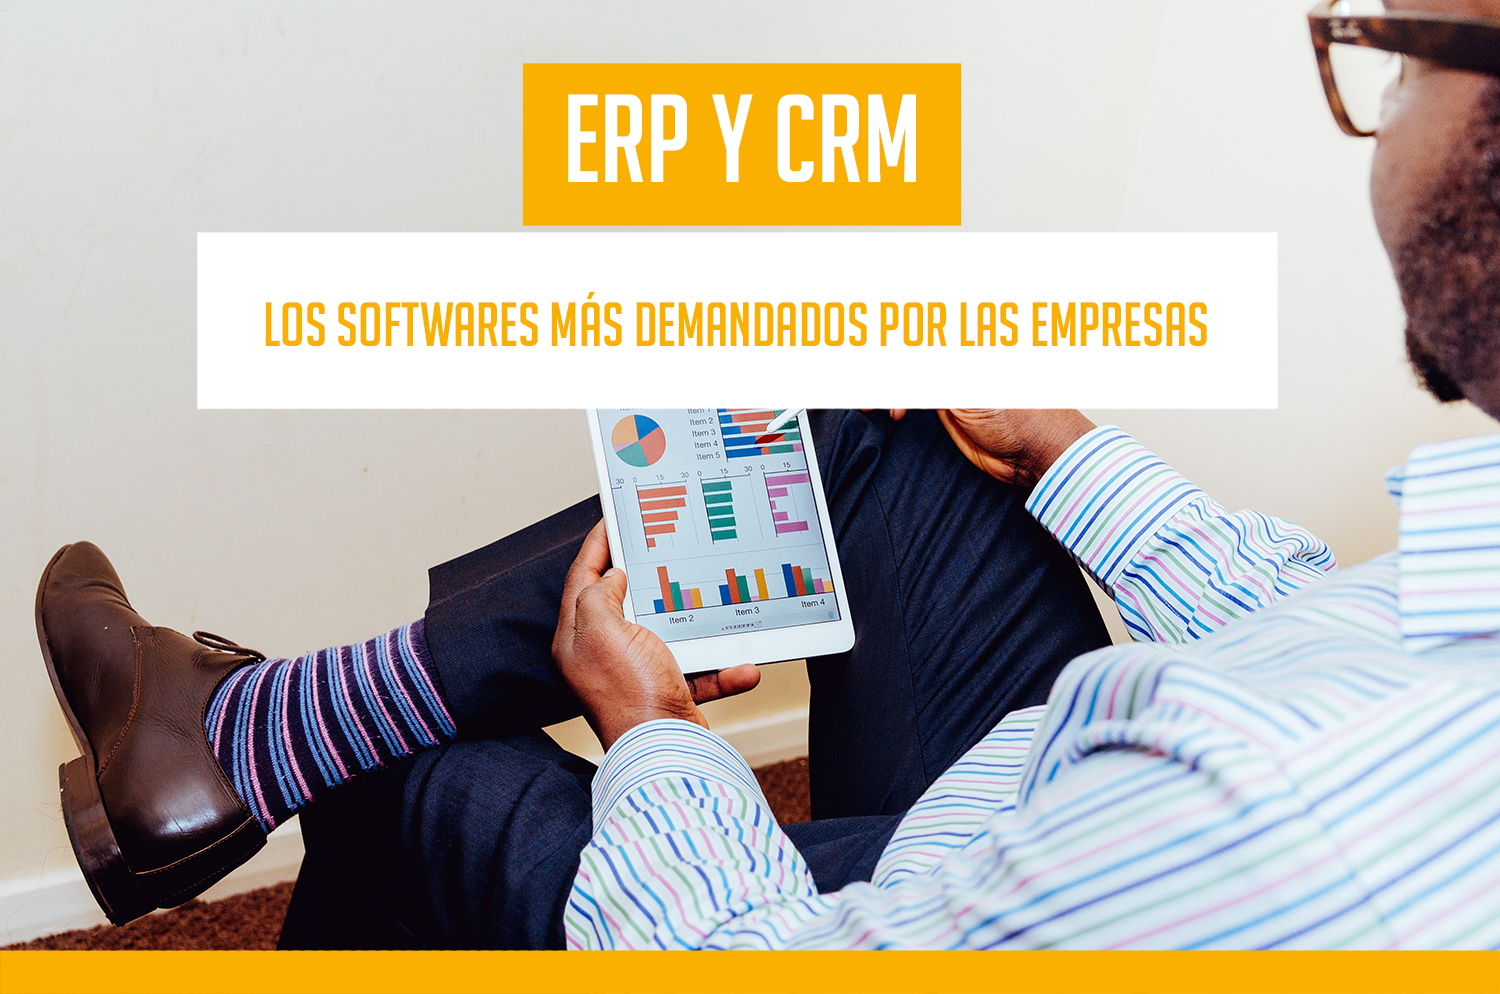 ERP y CRM como softwares más demandados por las empresas en la actualidad